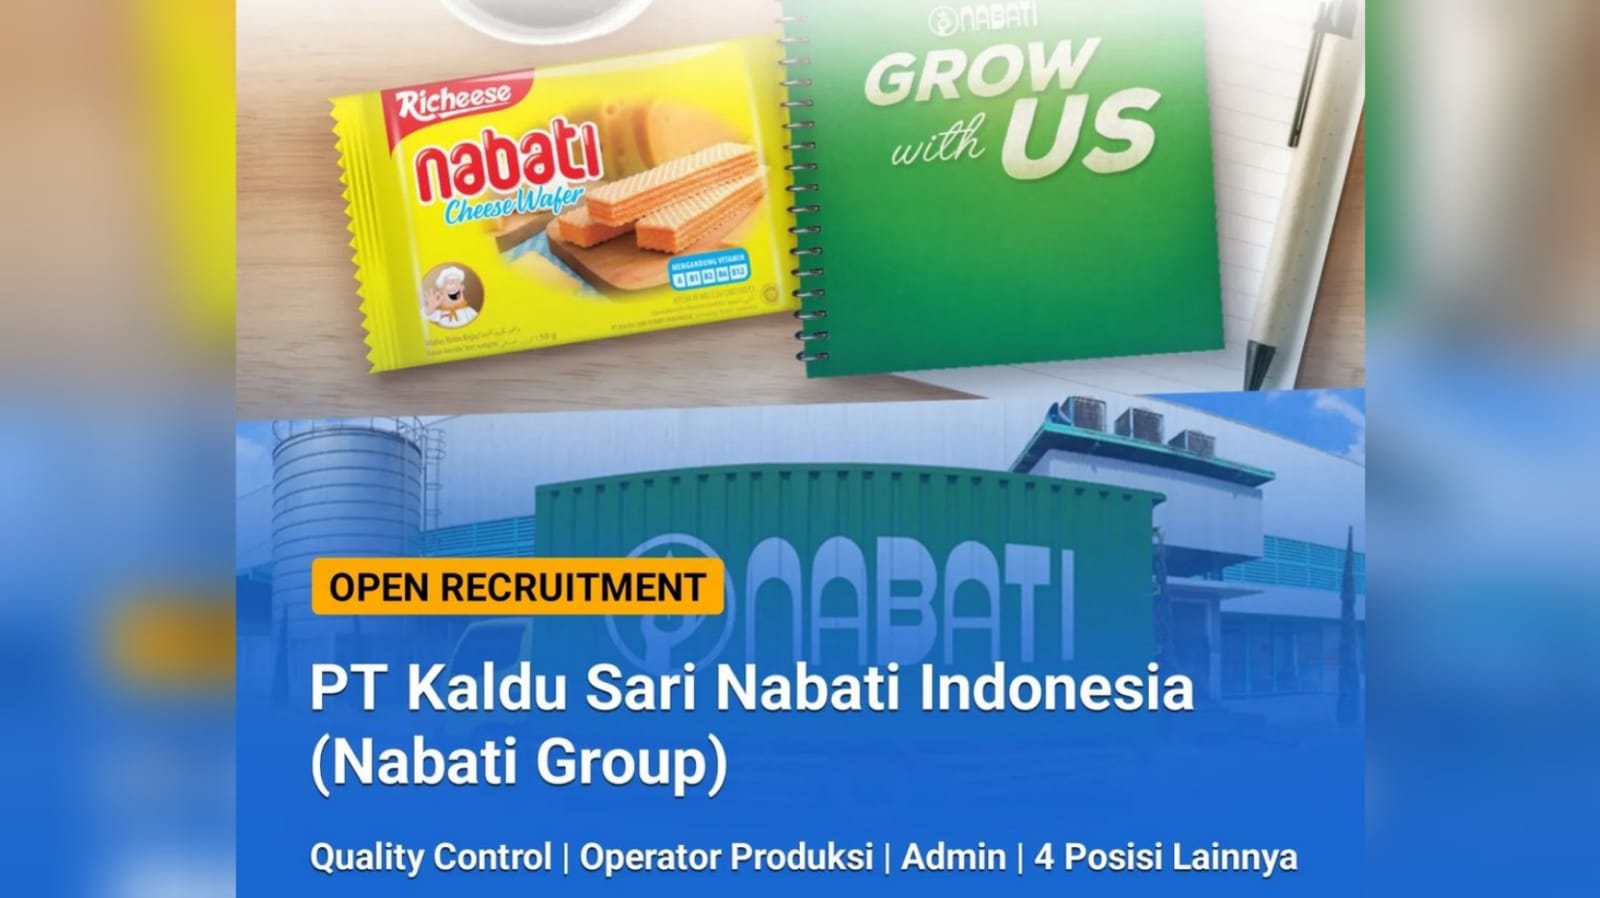 Lowongan Kerja PT Kaldu Sari Nabati Indonesia (Nabati Group) Tersedia 8 Posisi Jabatan Lulusan SMA SMK dan S1